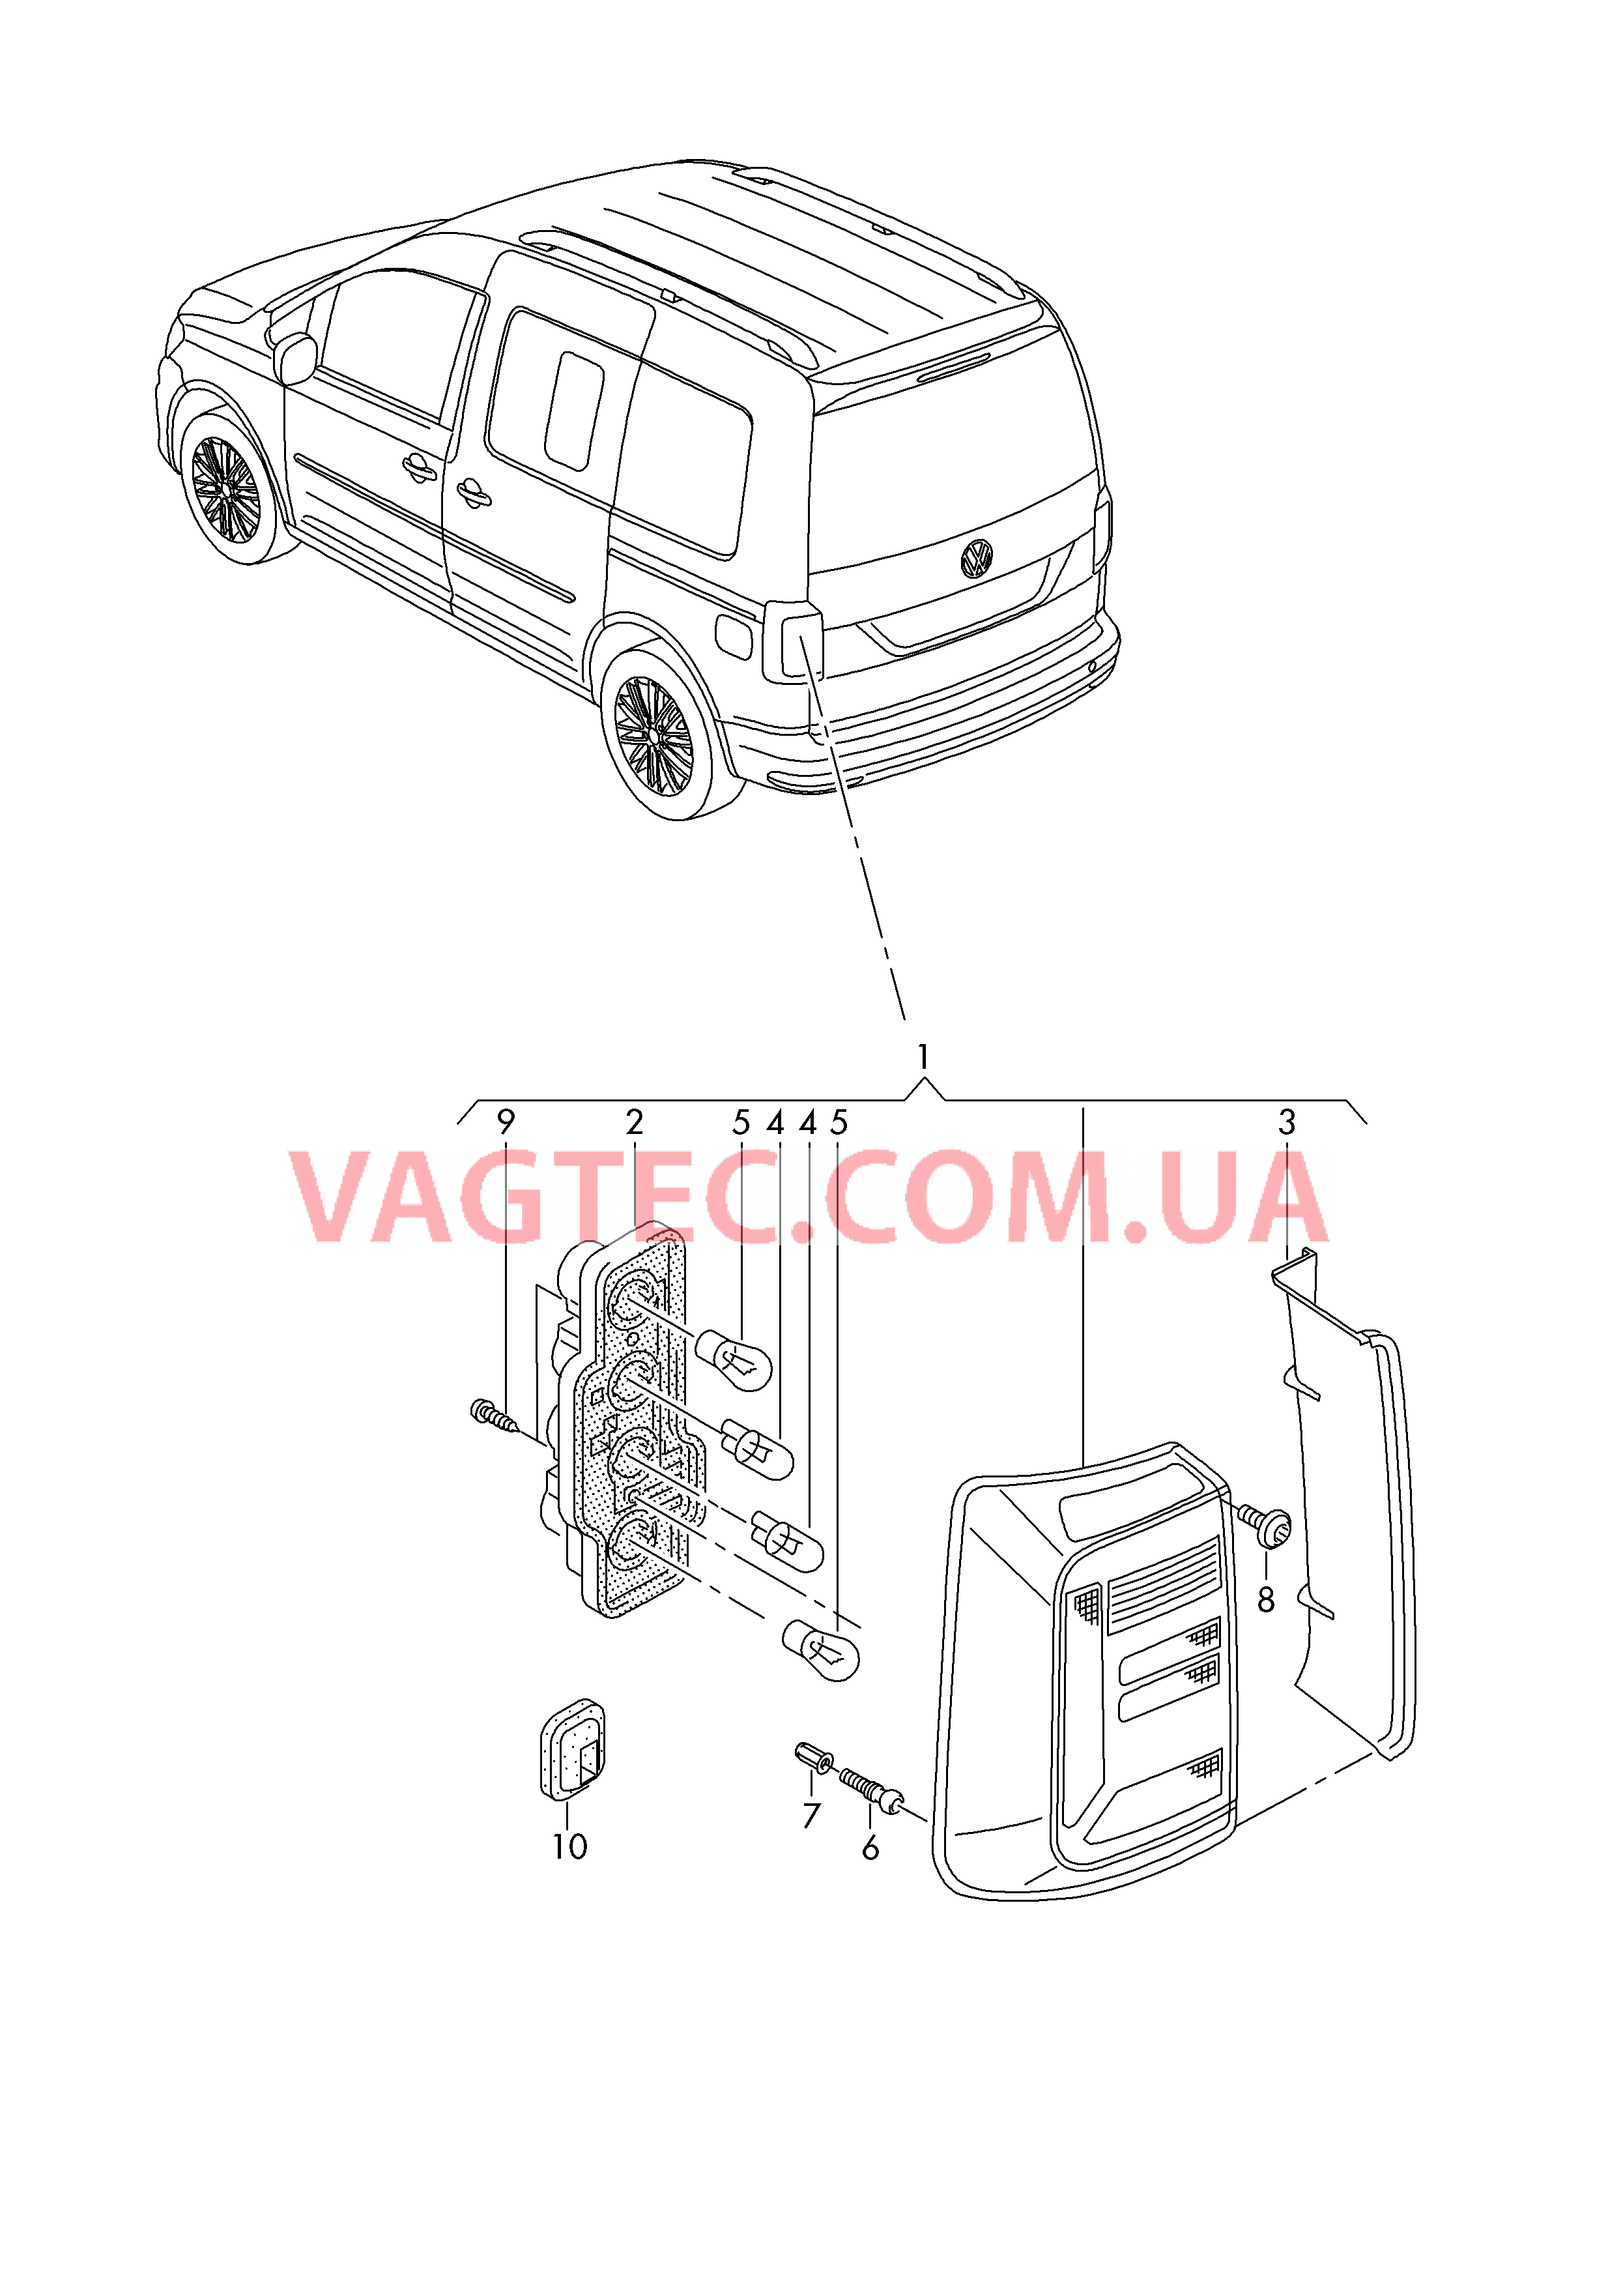 Задний фонарь для а/м с крышкой багажного отсека  для VOLKSWAGEN Caddy 2018